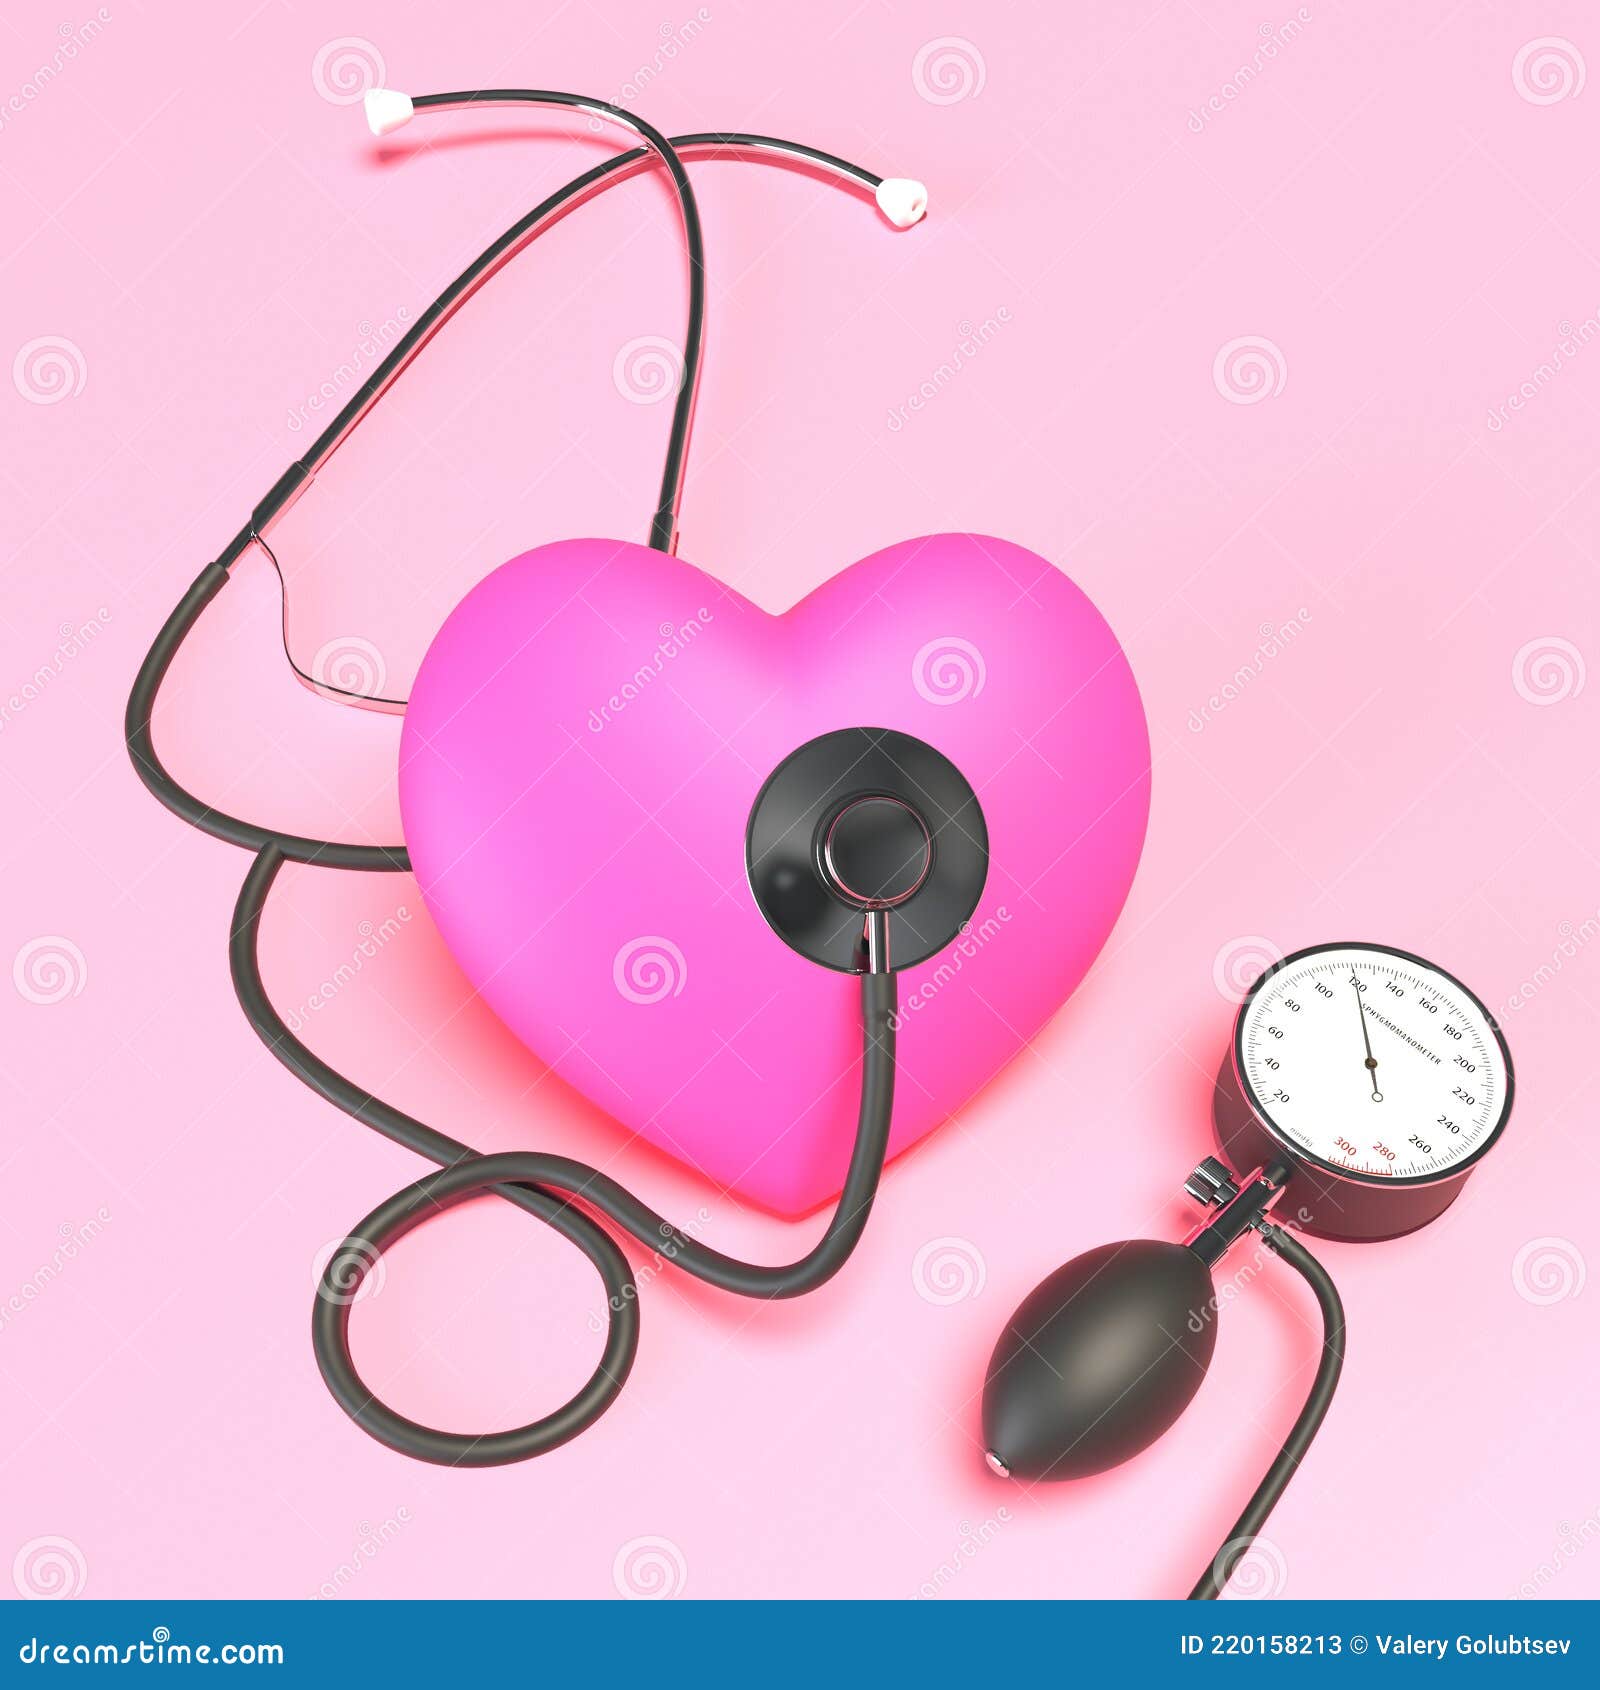 Estetoscopio Rosa Juguete Corazón Y Monitor De Presión Arterial En